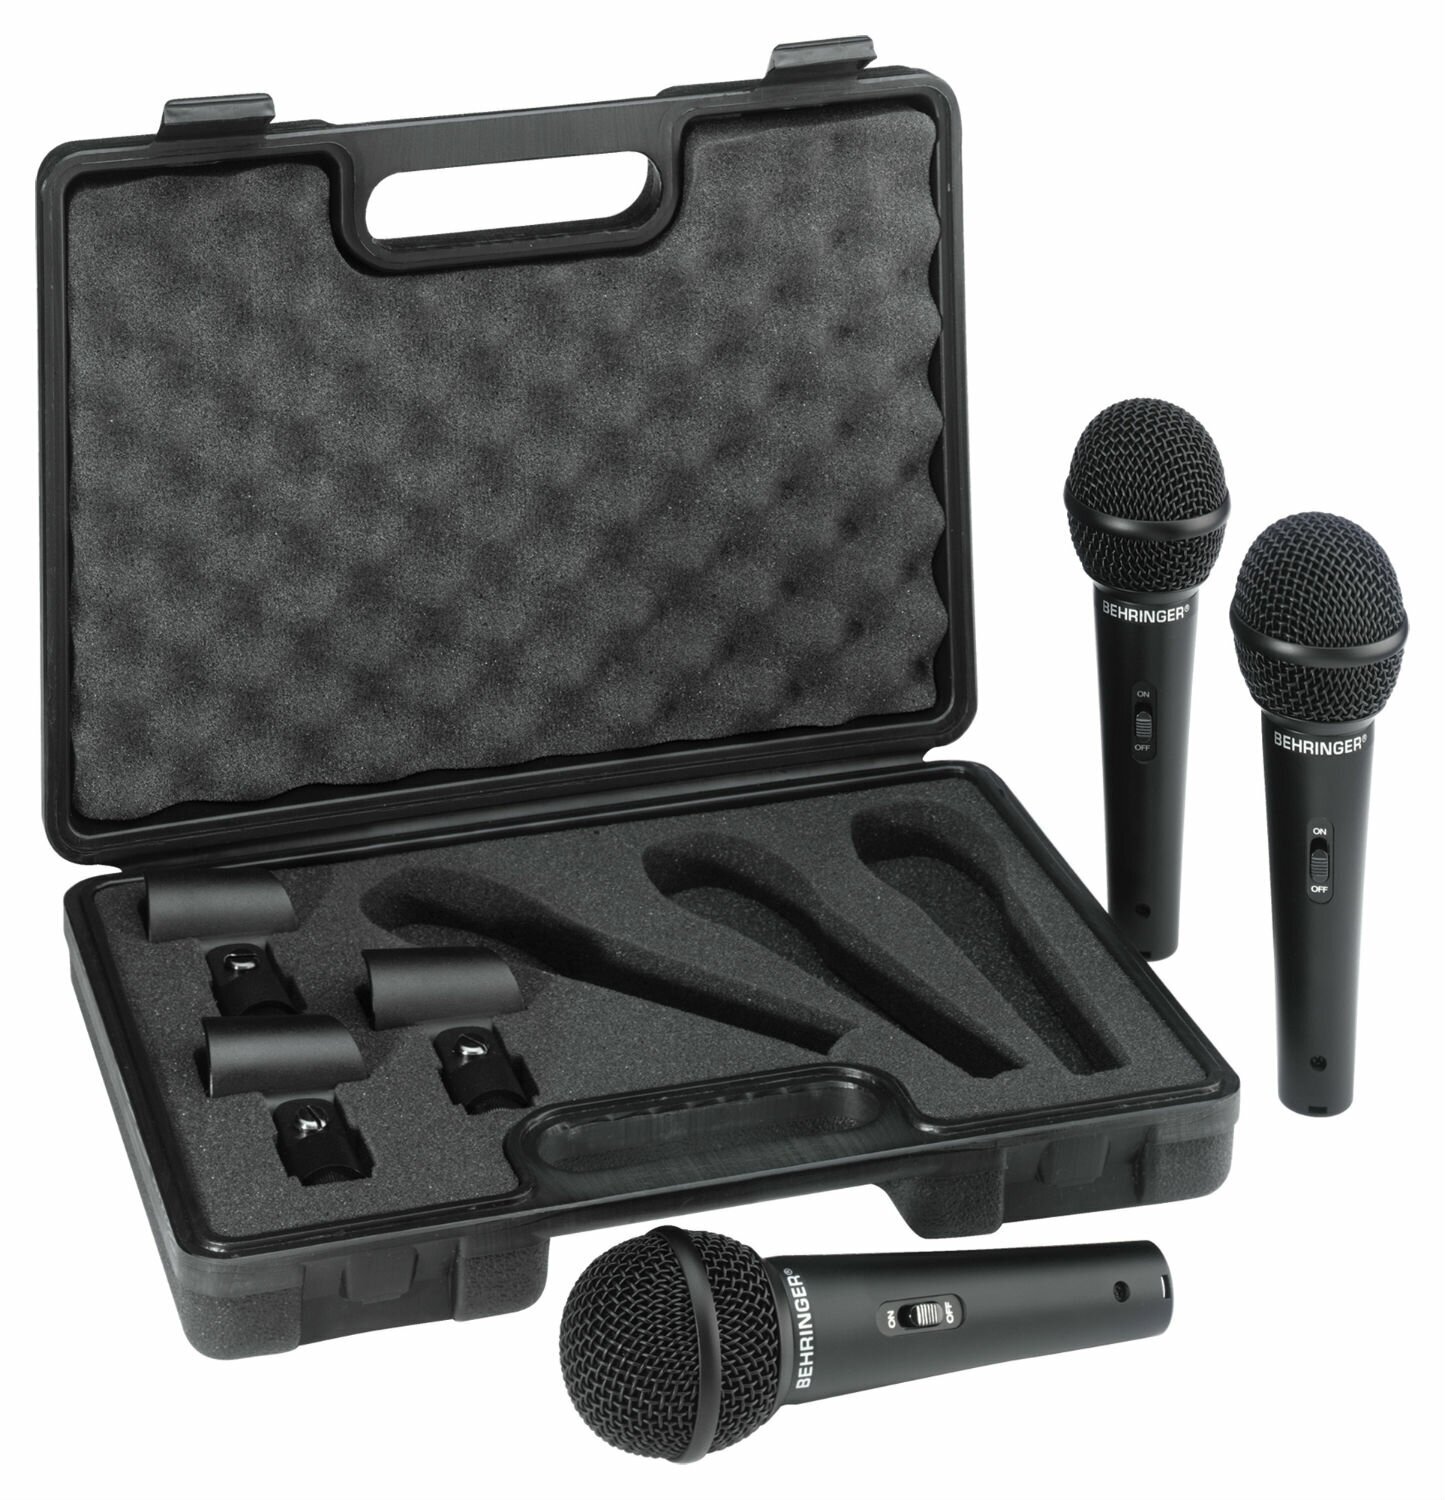 BEHRINGER XM1800S набор из 3-х динамических микрофонов (суперкардиоида) в комплекте с держателями и транспортным кейсом